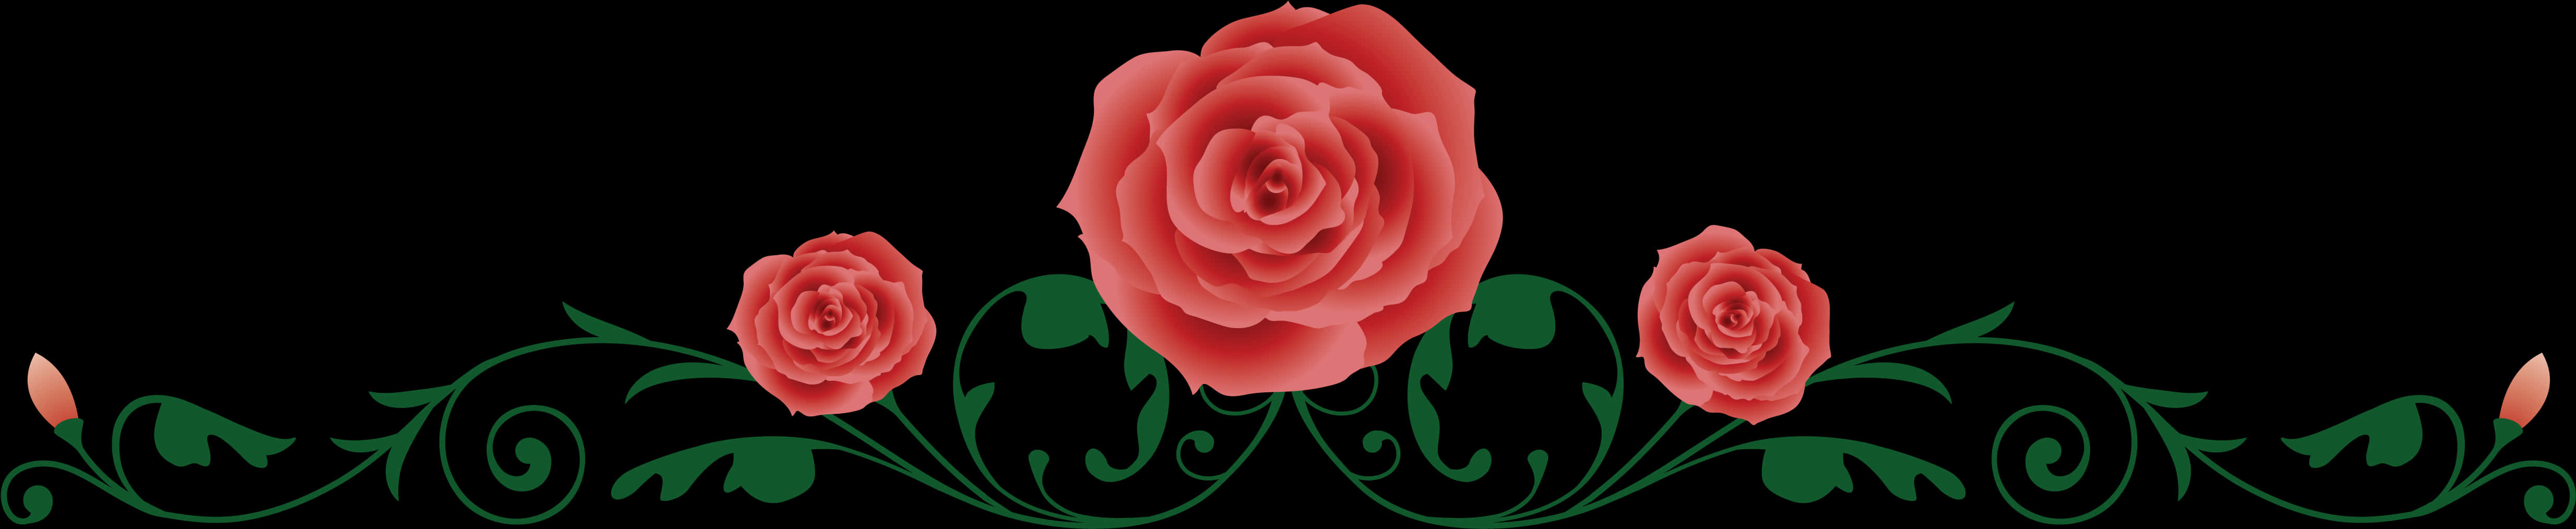 Elegant Rose Vine Border PNG